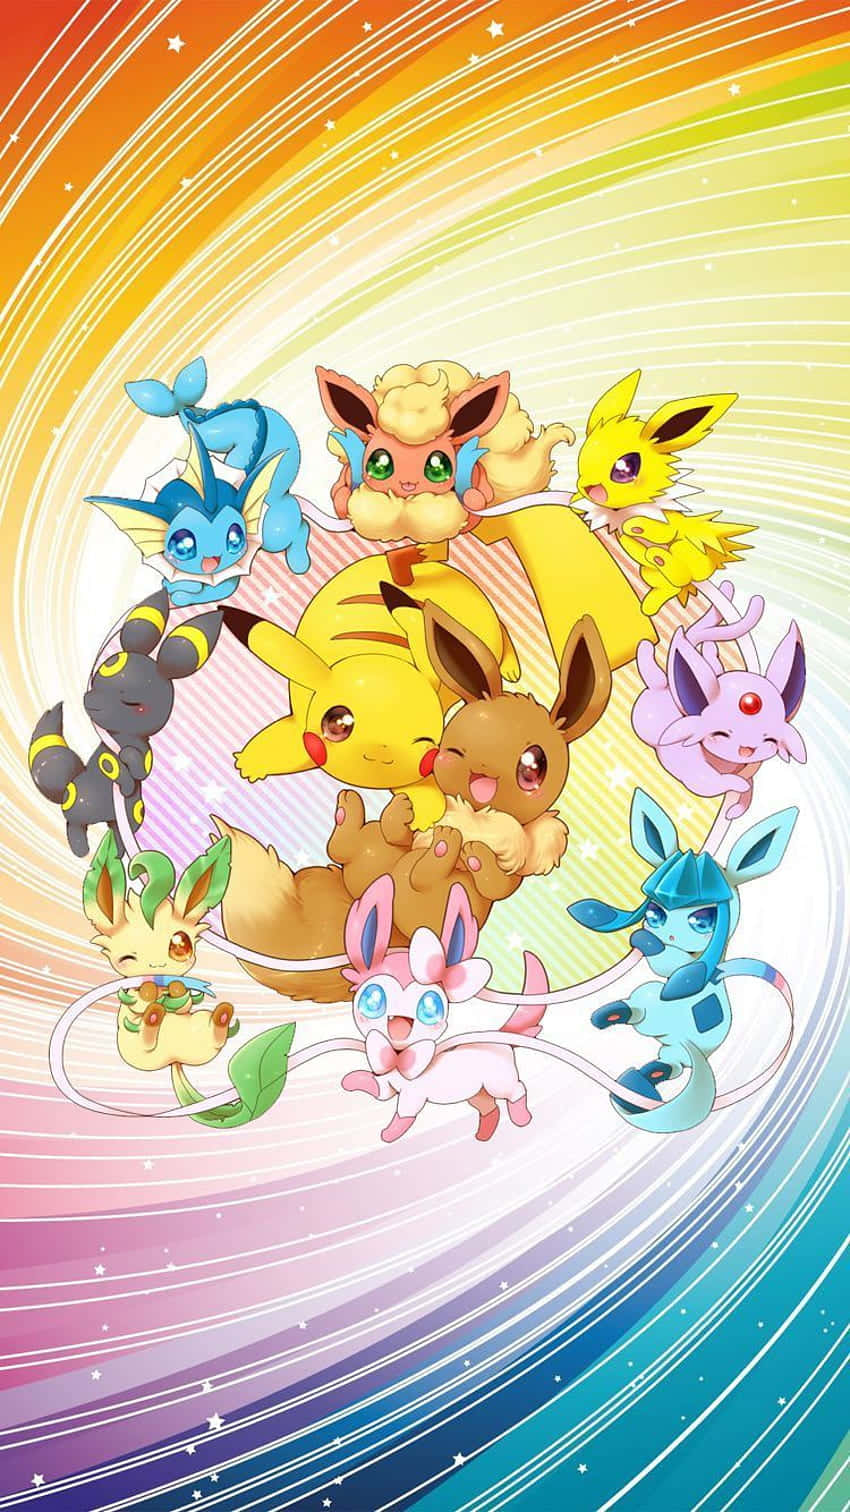 De er klar til en eventyr - Pikachu og Eevee! Wallpaper